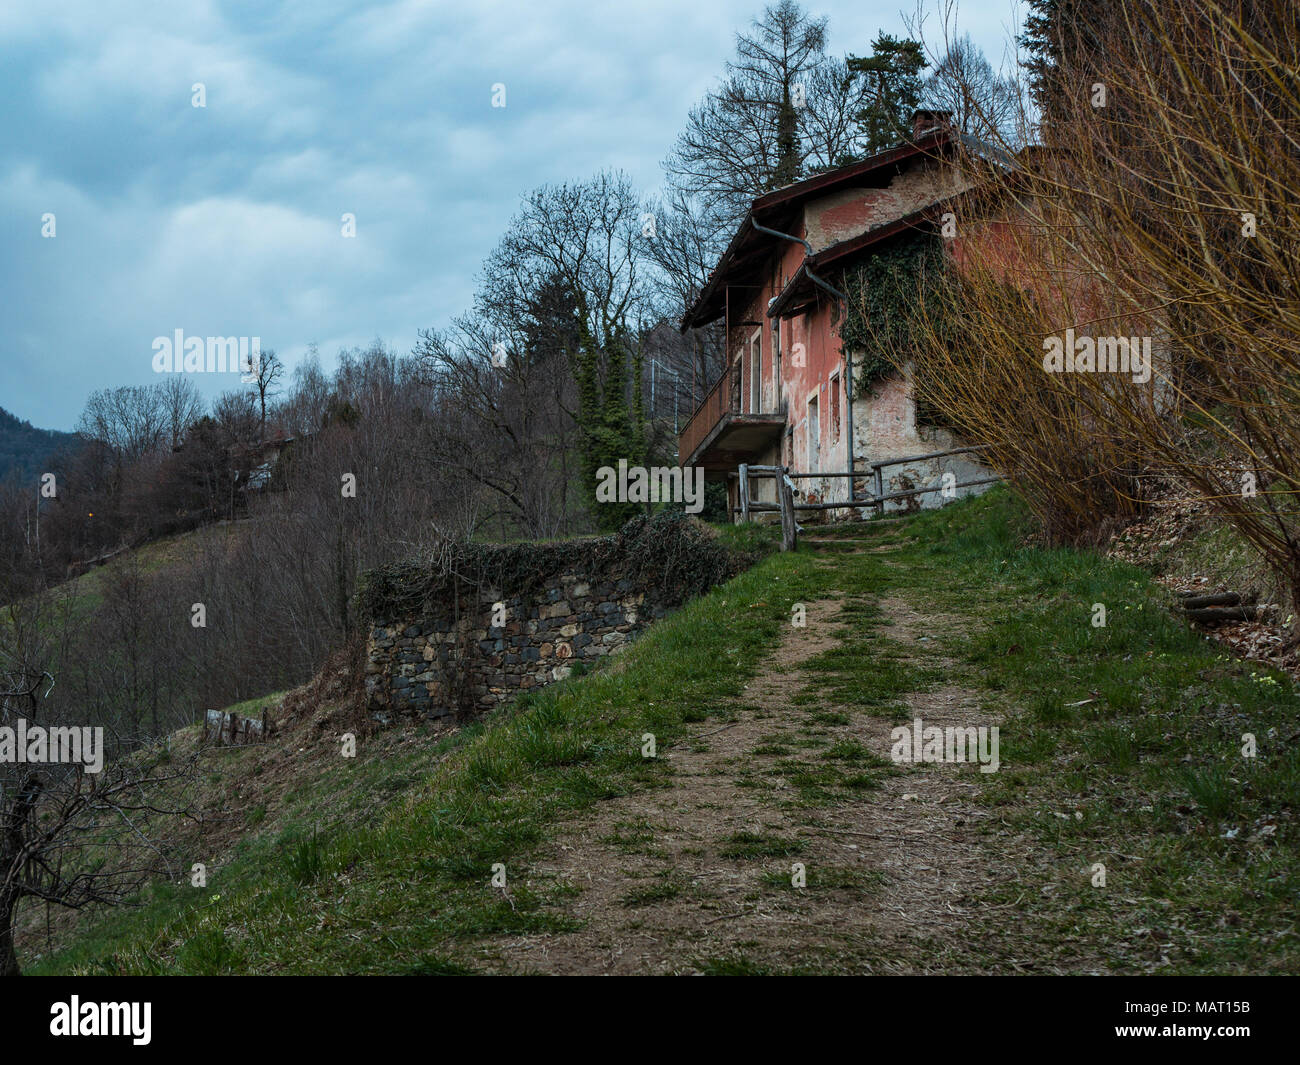 Vieille maison abandonnée près des bois. Route de campagne vers la petite ferme en ruines, dans la réserve naturelle. Burcina, Biella, Italie Banque D'Images